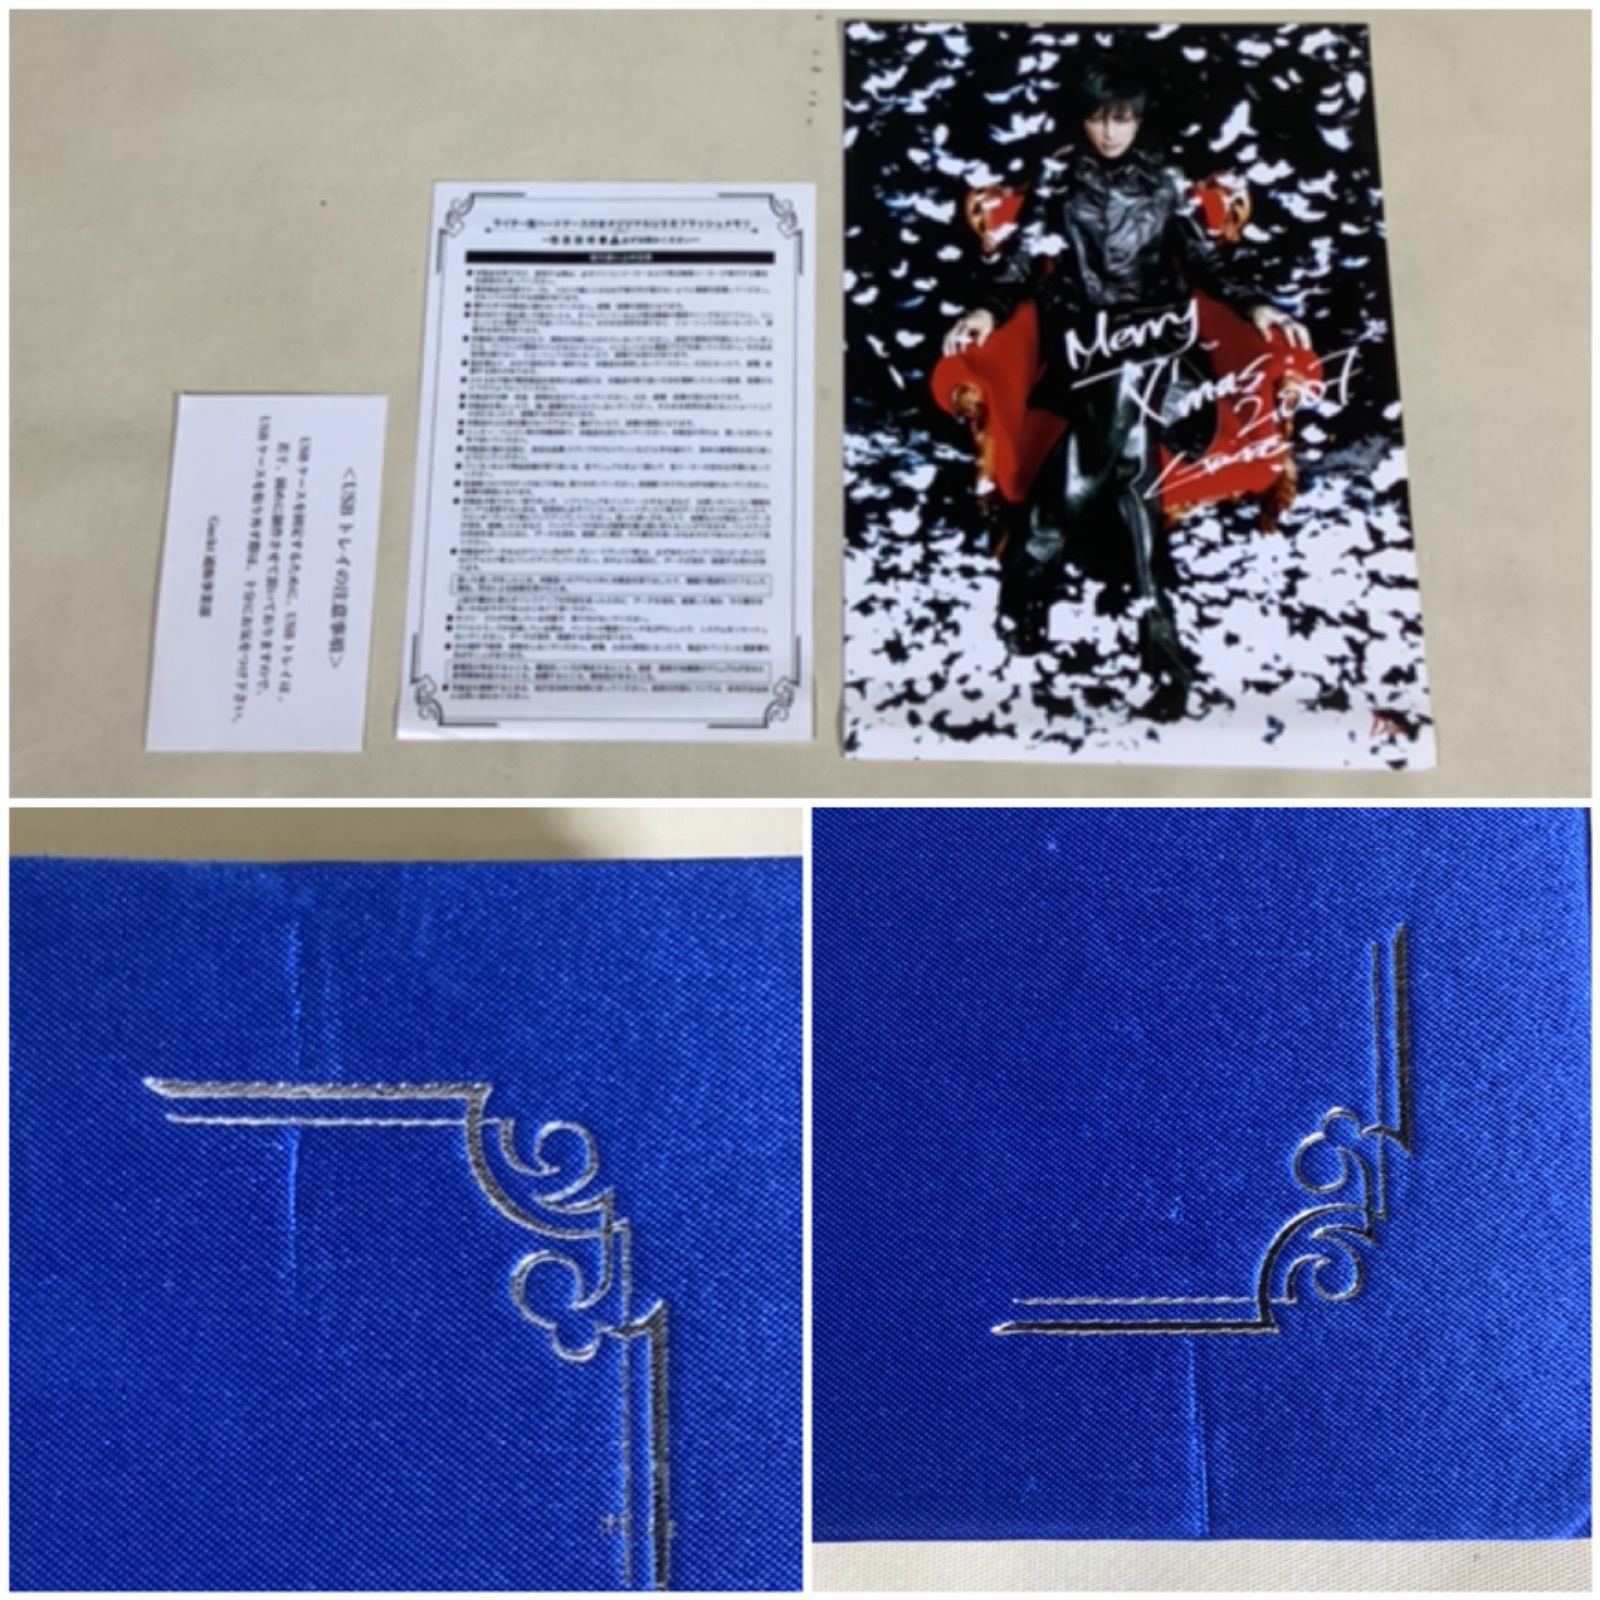 黒 桜古典 Gackt パンフレット写真集エッセイ・・まとめて - 通販